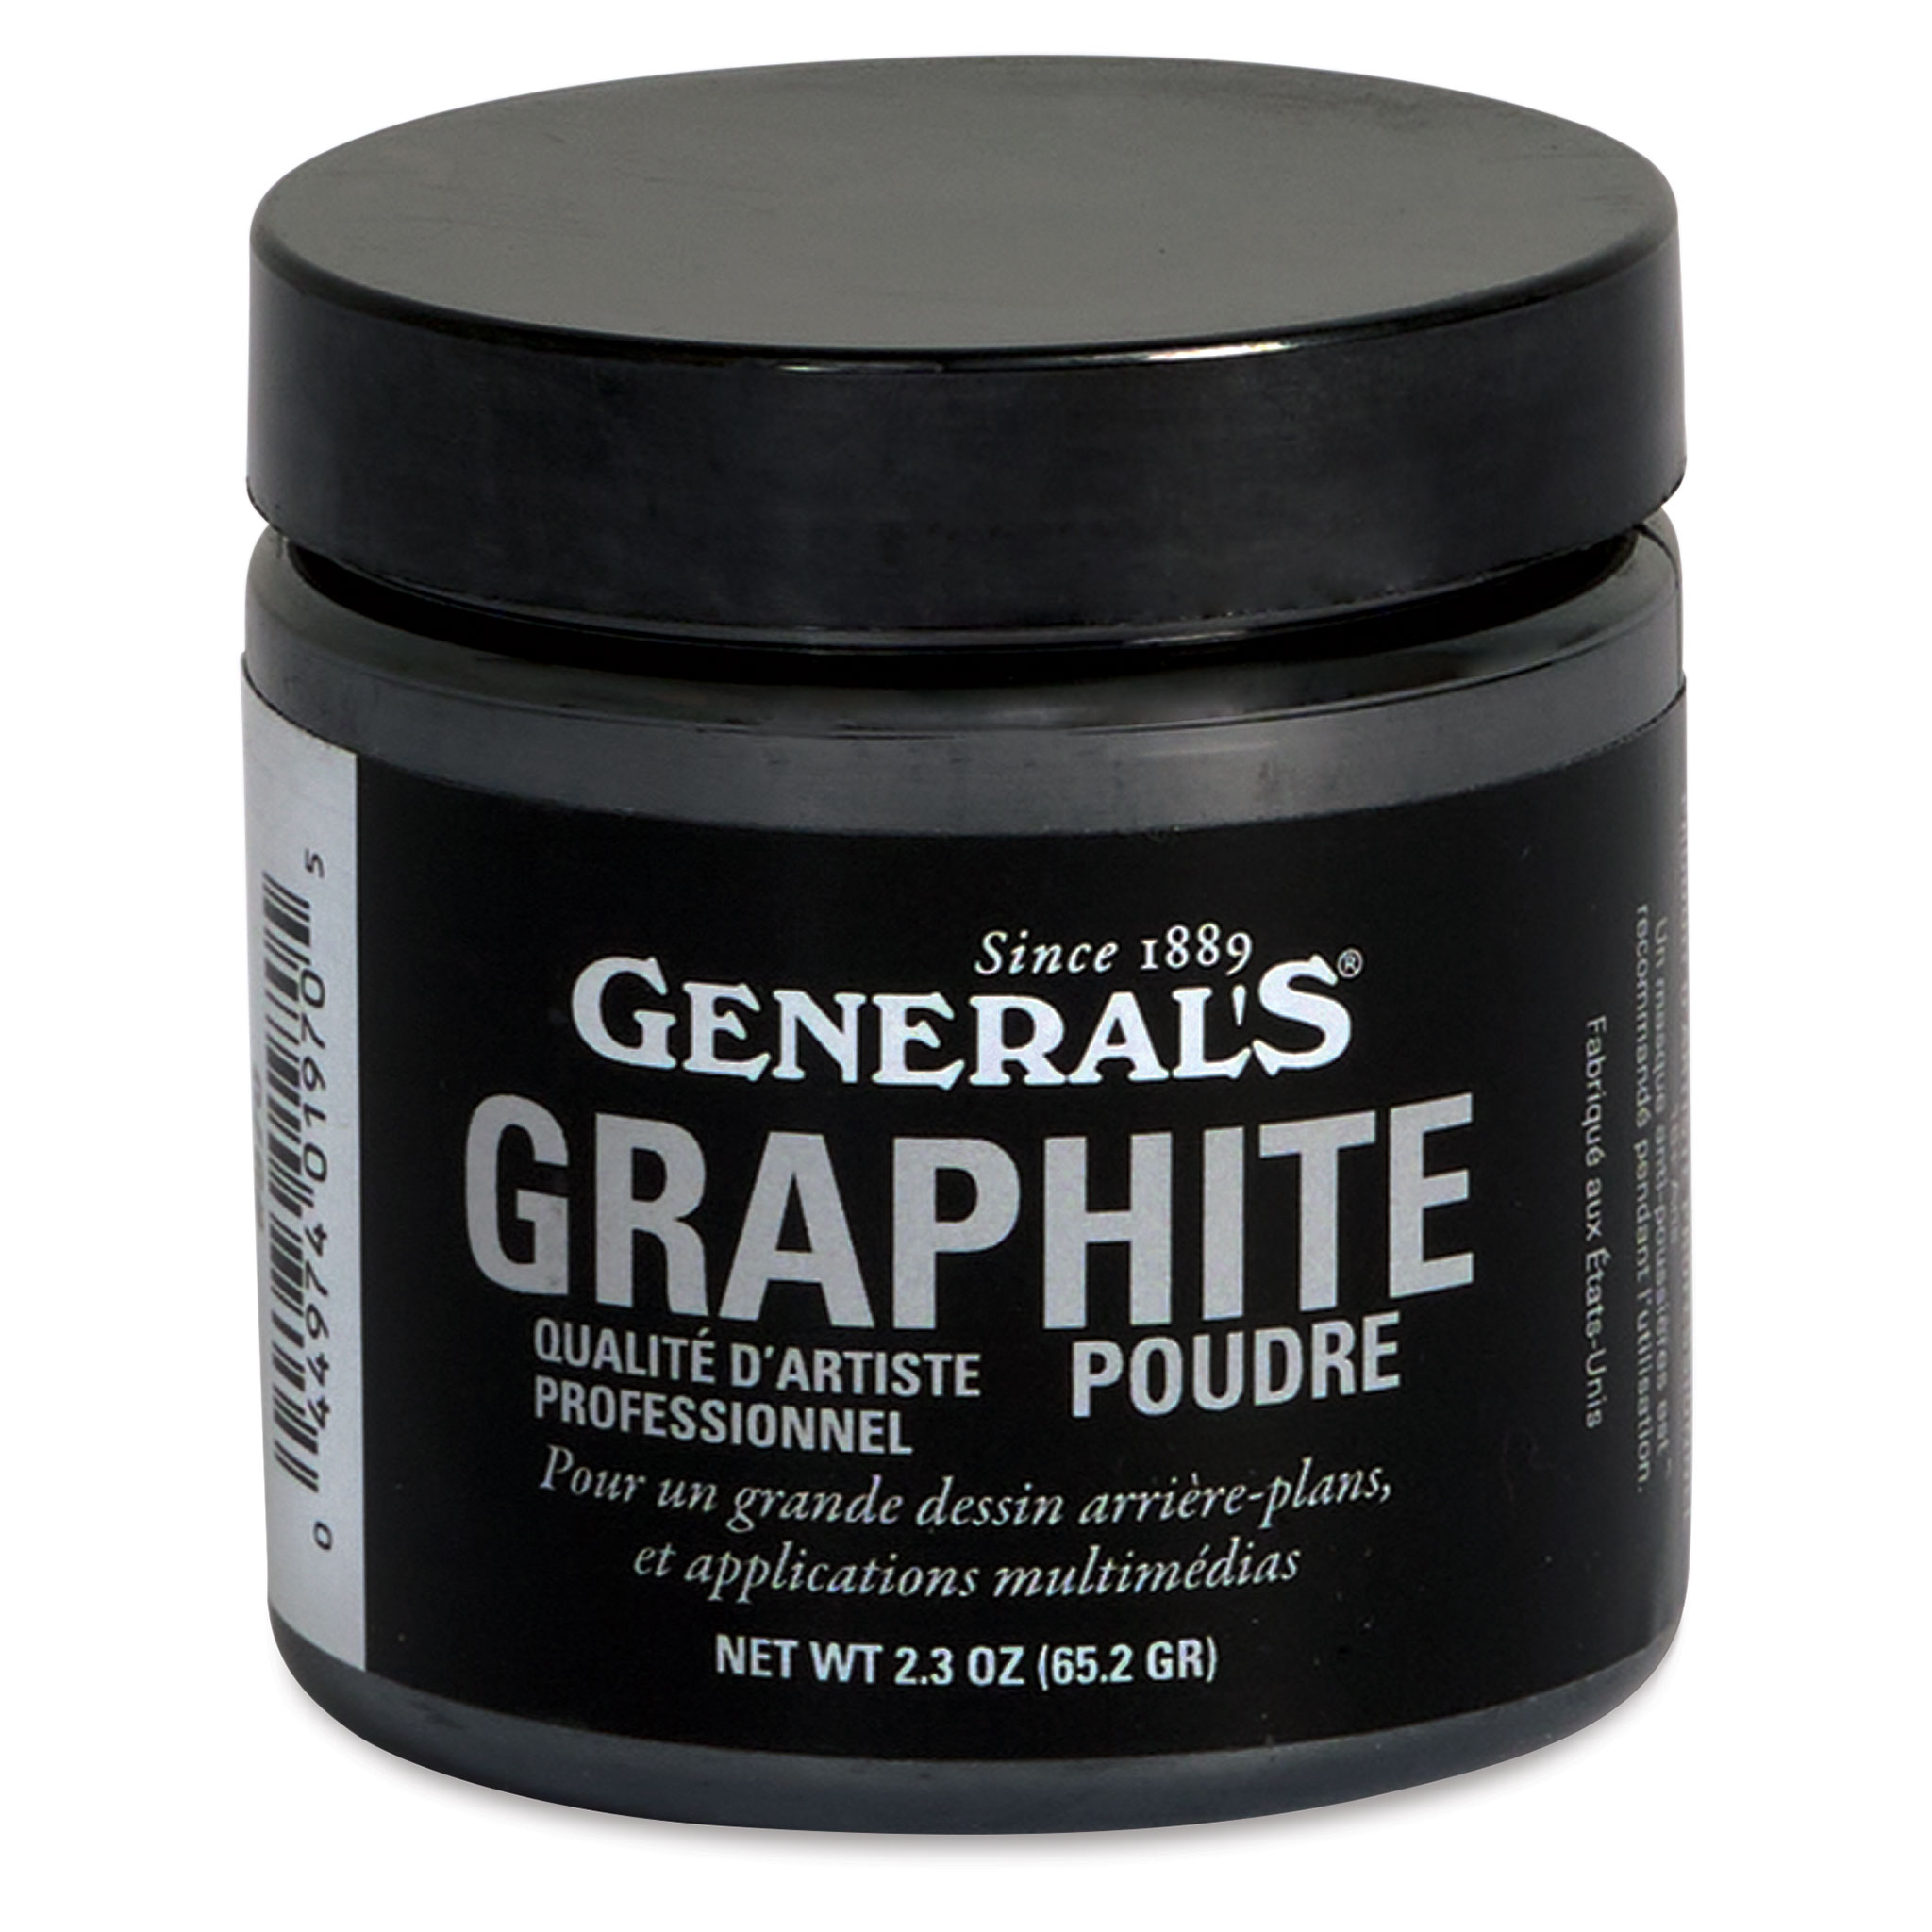 Poudre de graphite - 2.3 oz